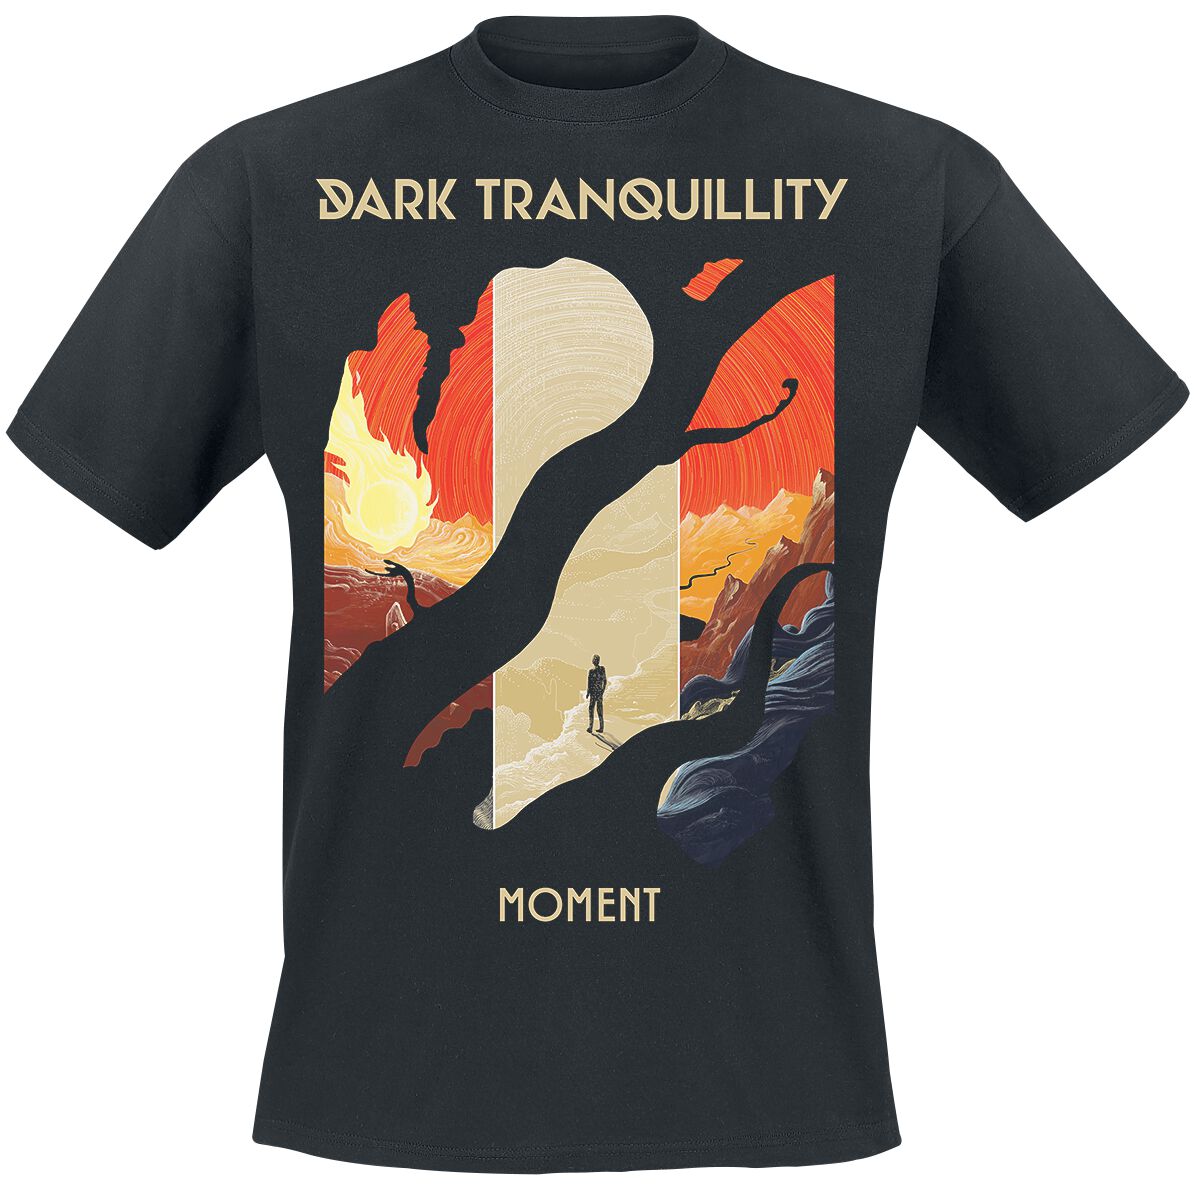 Dark Tranquillity T-Shirt - Moment - S bis XL - für Männer - Größe XL - schwarz  - EMP exklusives Merchandise!